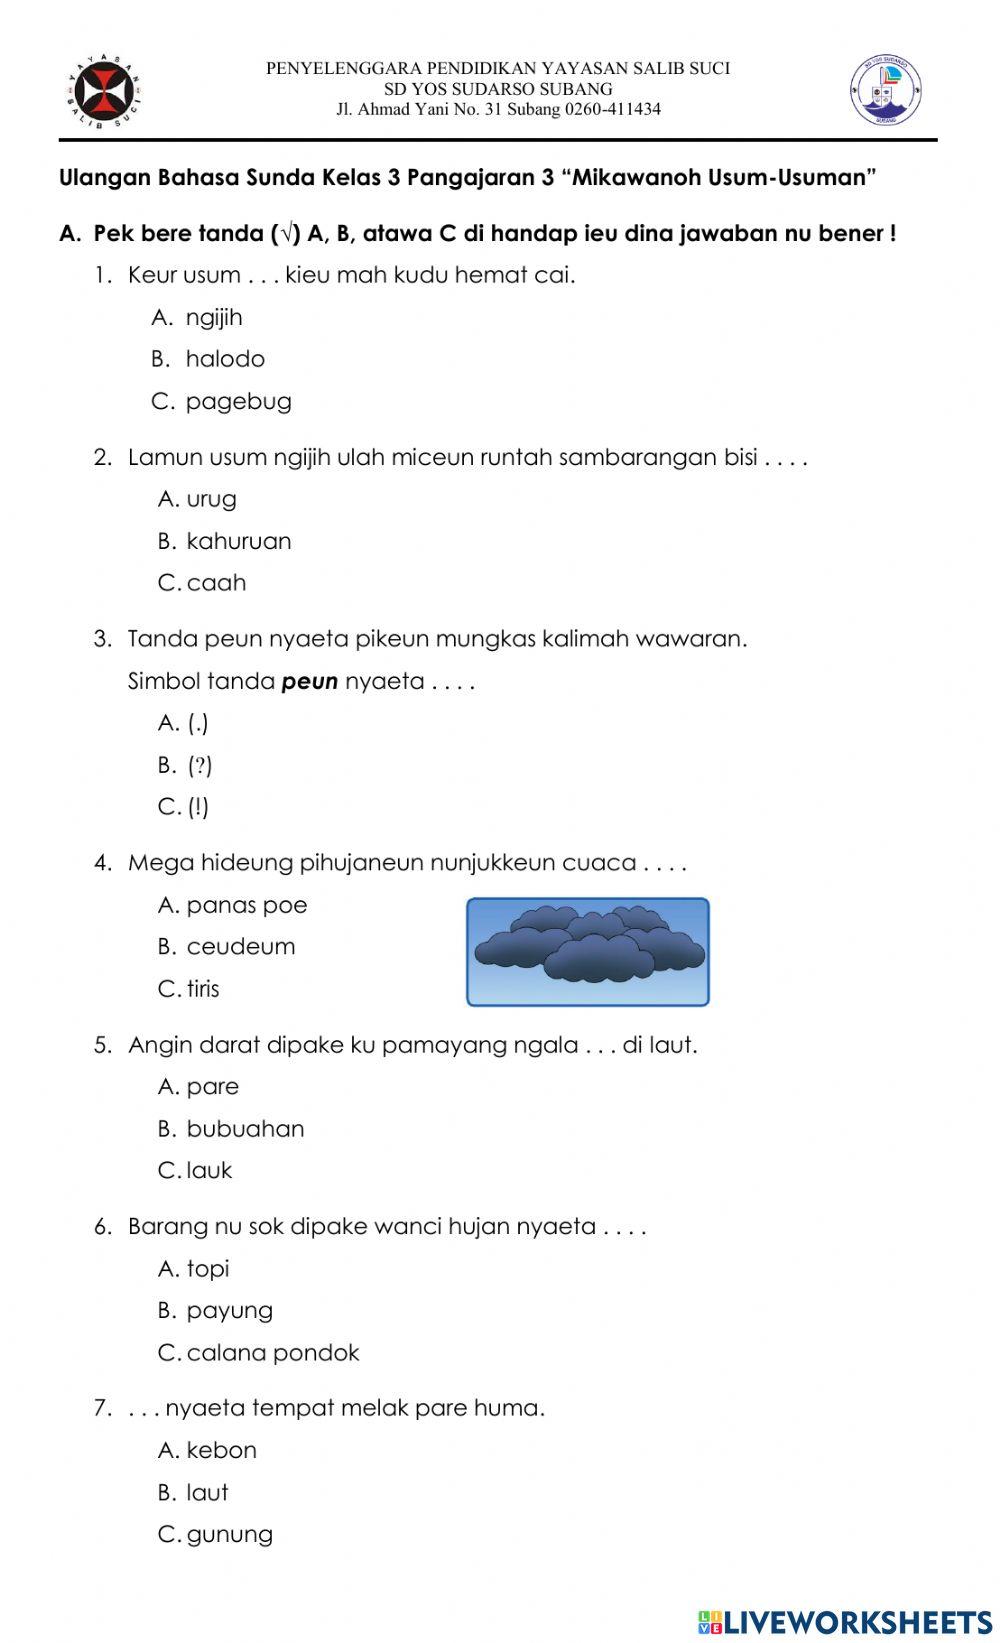 Ulangan Bahasa Sunda Kelas 3 Pangajaran 3